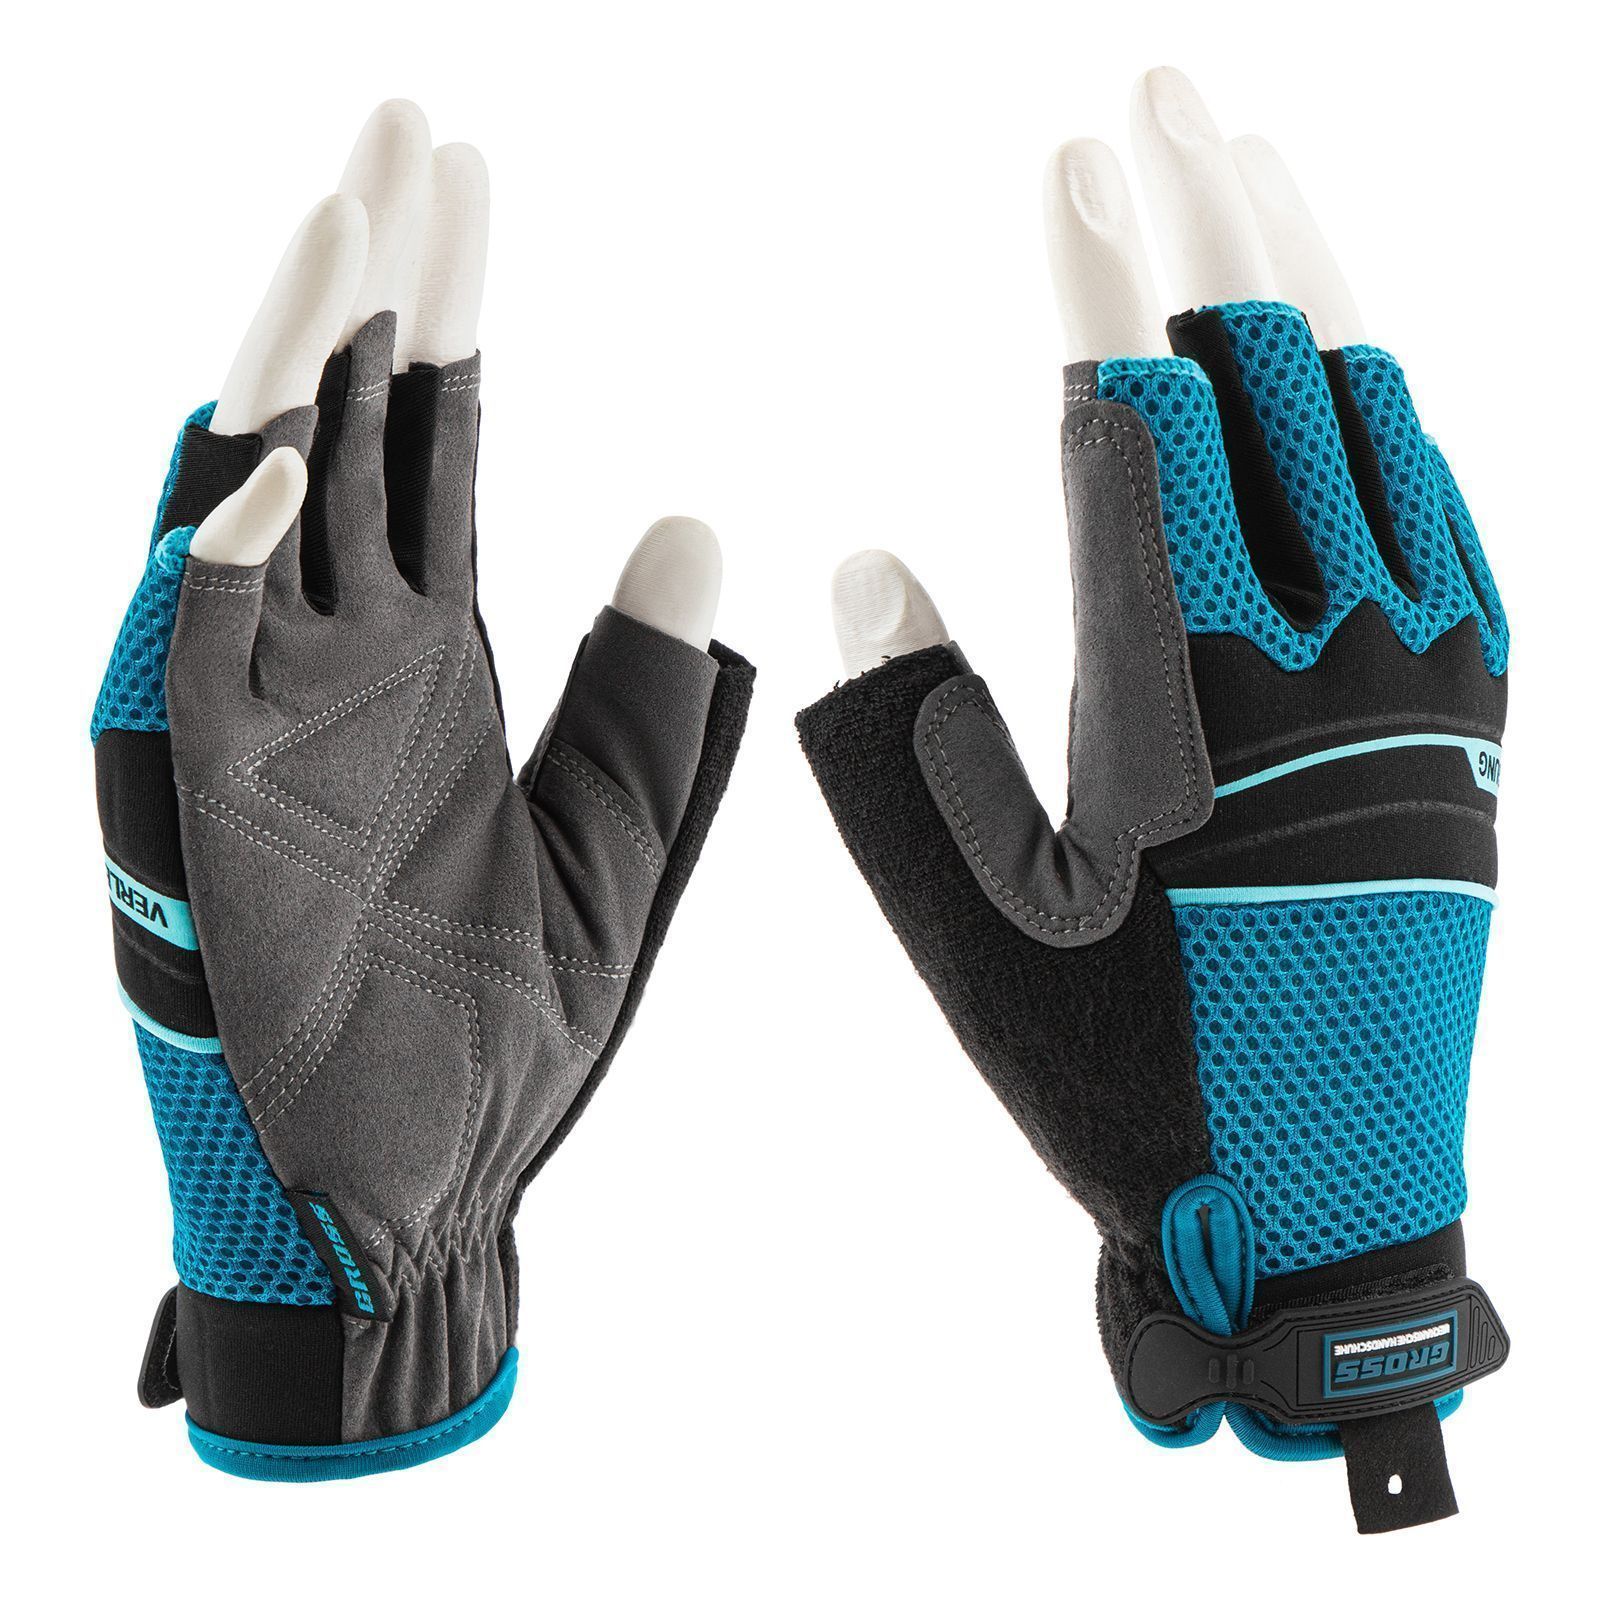 Перчатки комбинированные облегченные, открытые пальцы, AKTIV, размер XL (10)  ...Gross 90310